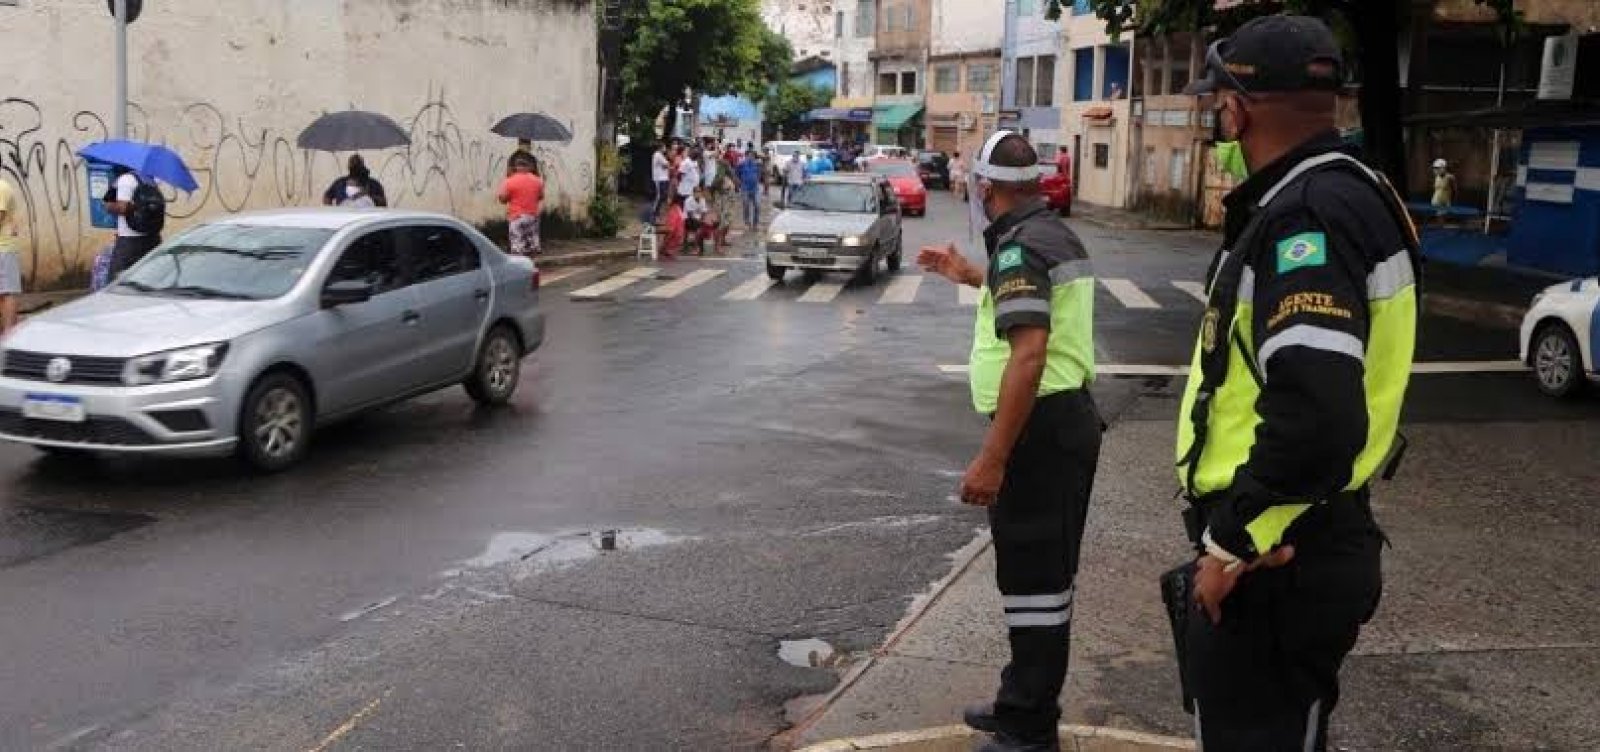 Pernambués mantém liderança de casos de Covid-19 em Salvador